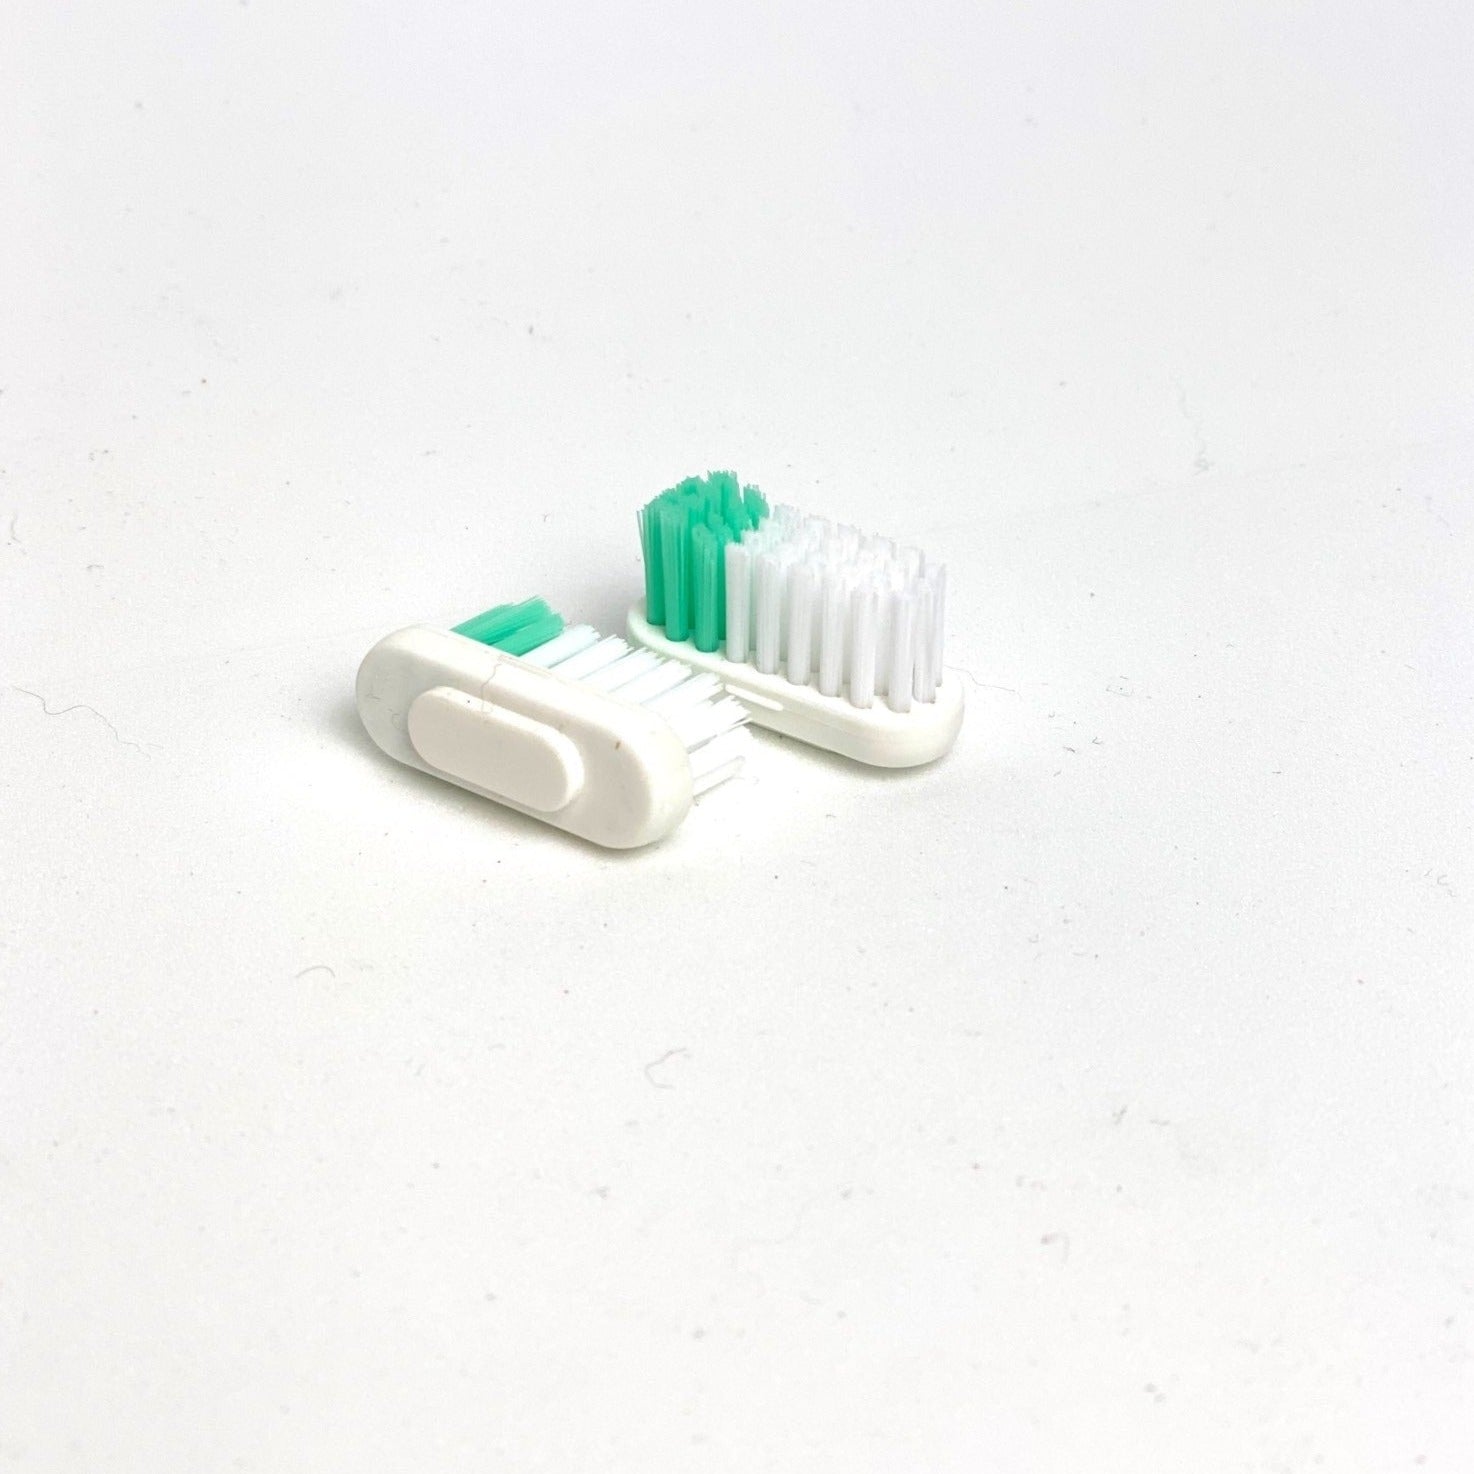 Cabezales de recambio cepillo dental, Lamazuna